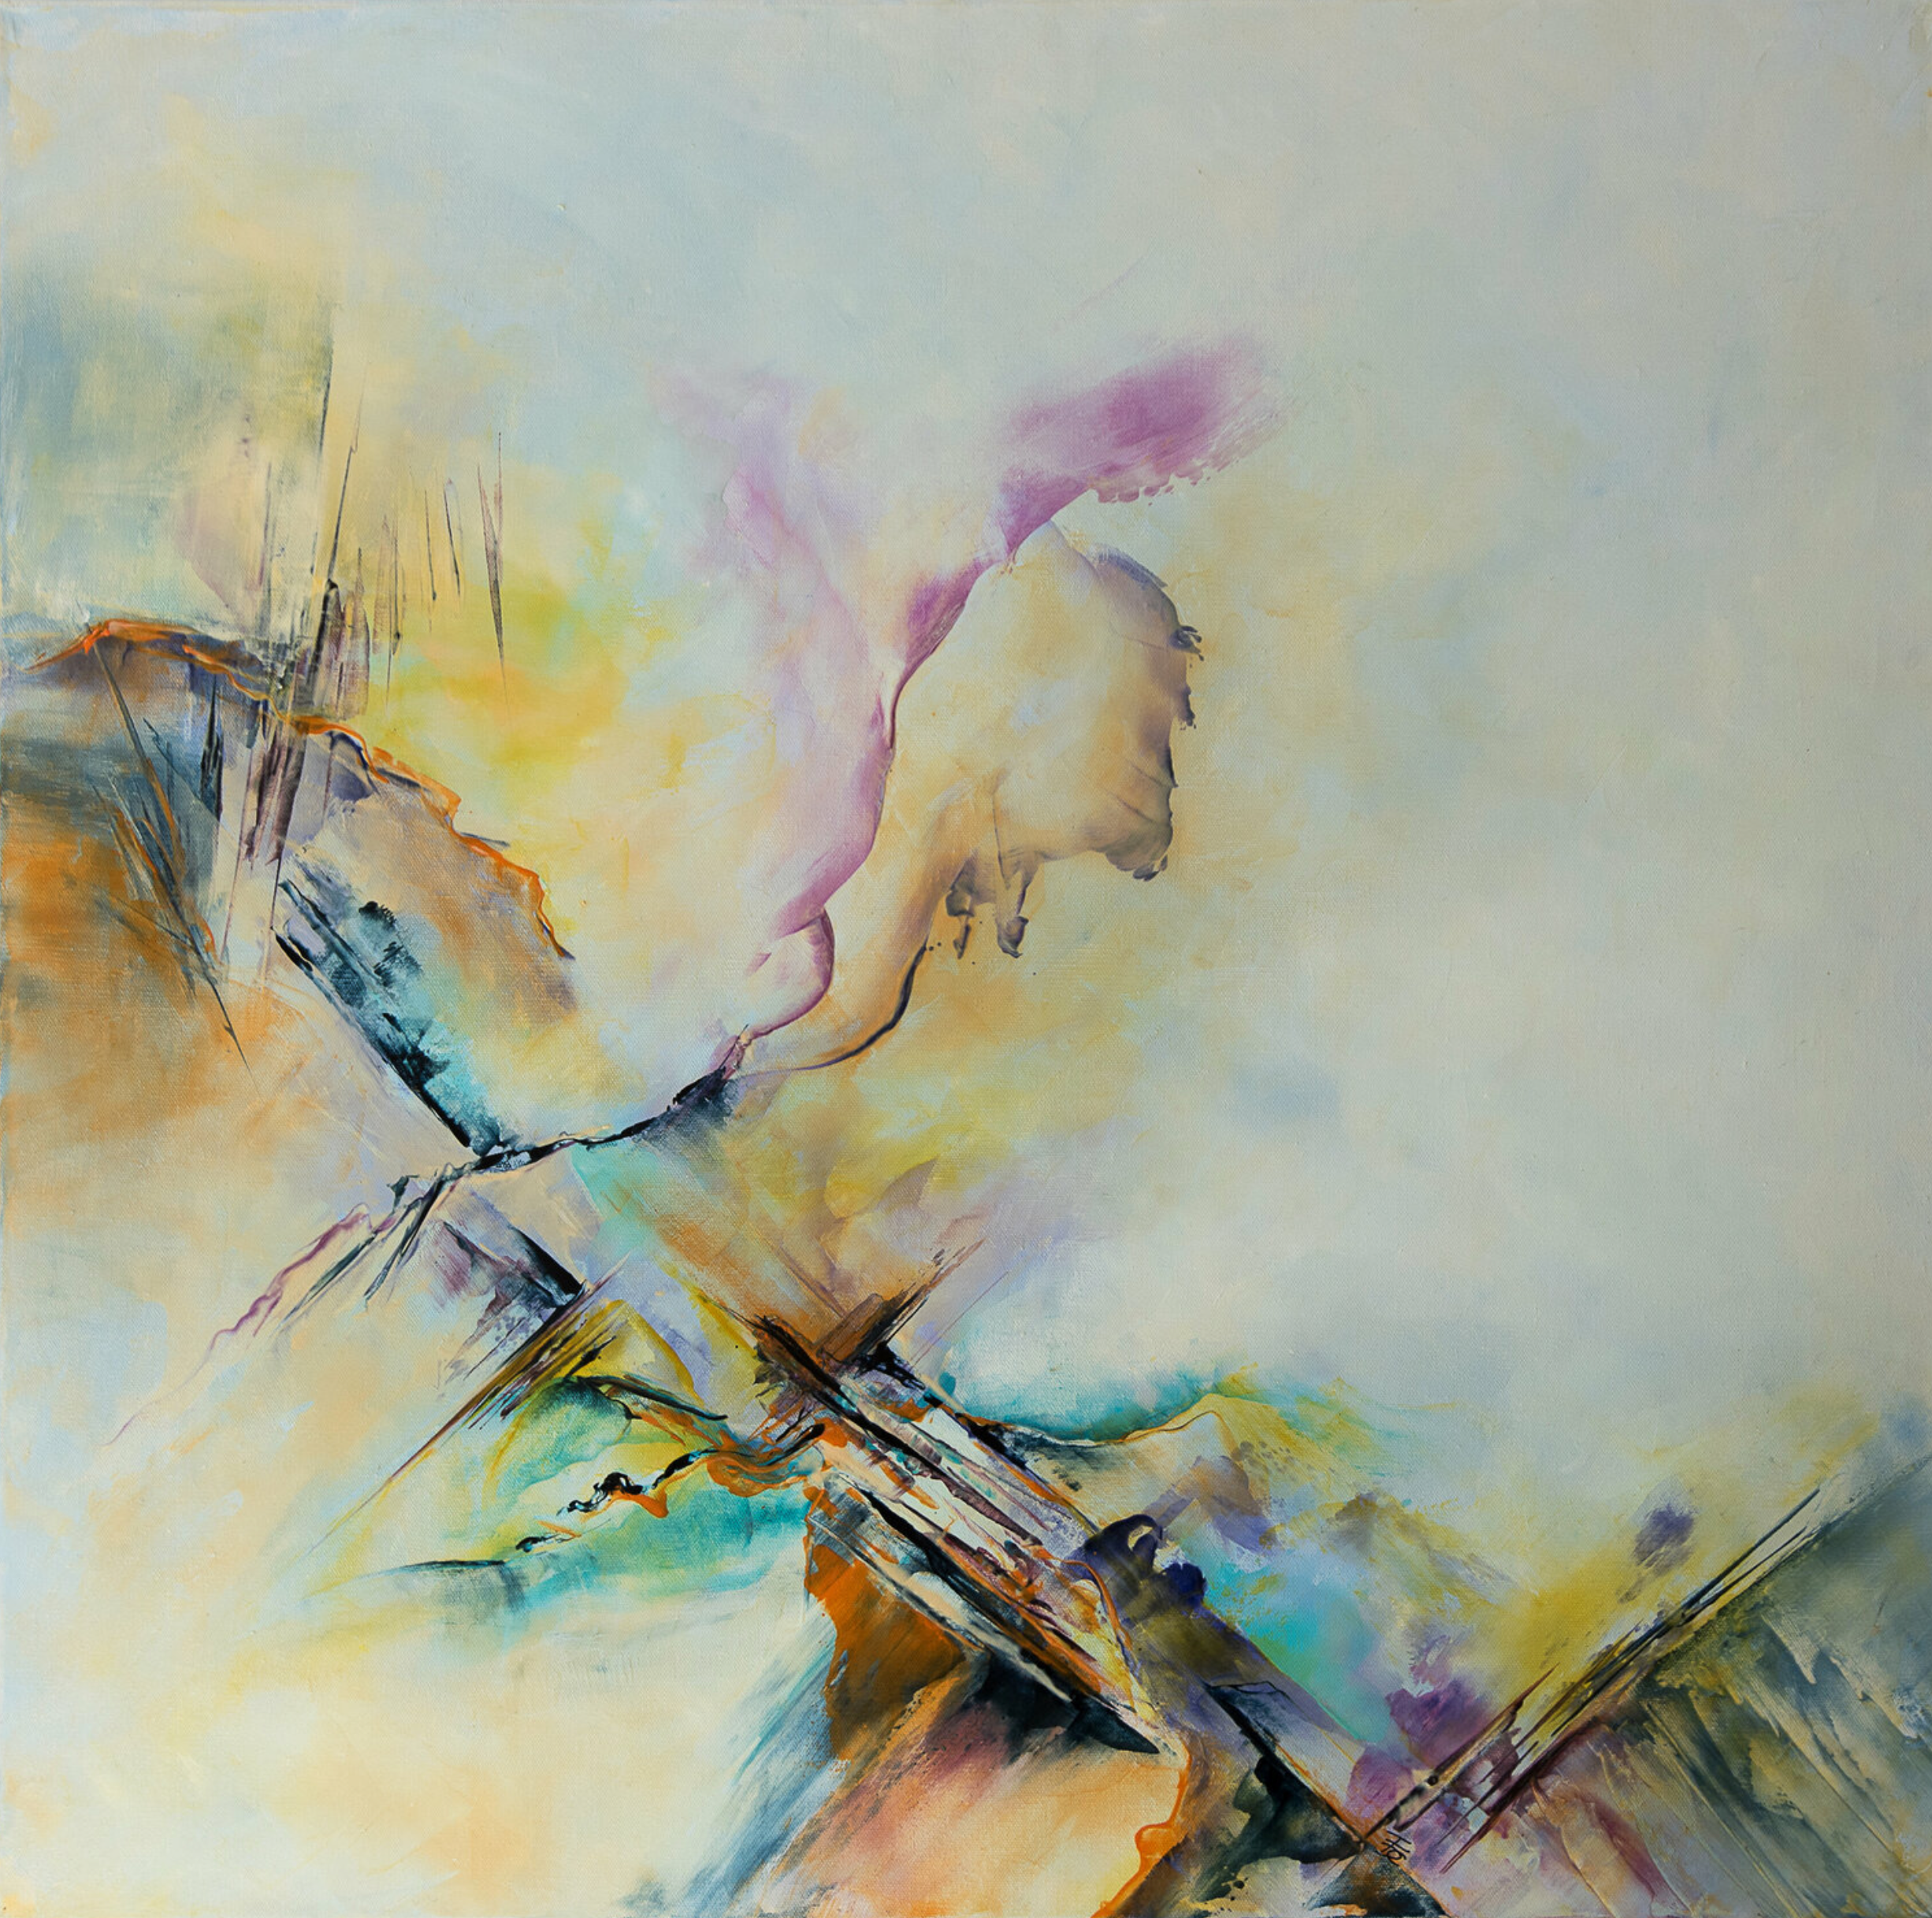 La peinture abstraite "Sirius" de Françoise Dugourd-Caput montre un tourbillon de couleurs évoquant la nature et le flux du temps, parfois rapidement rendu visible par des arêtes vives et d'autres moments, détendus et sereins dans des couleurs douces, agréables et souples